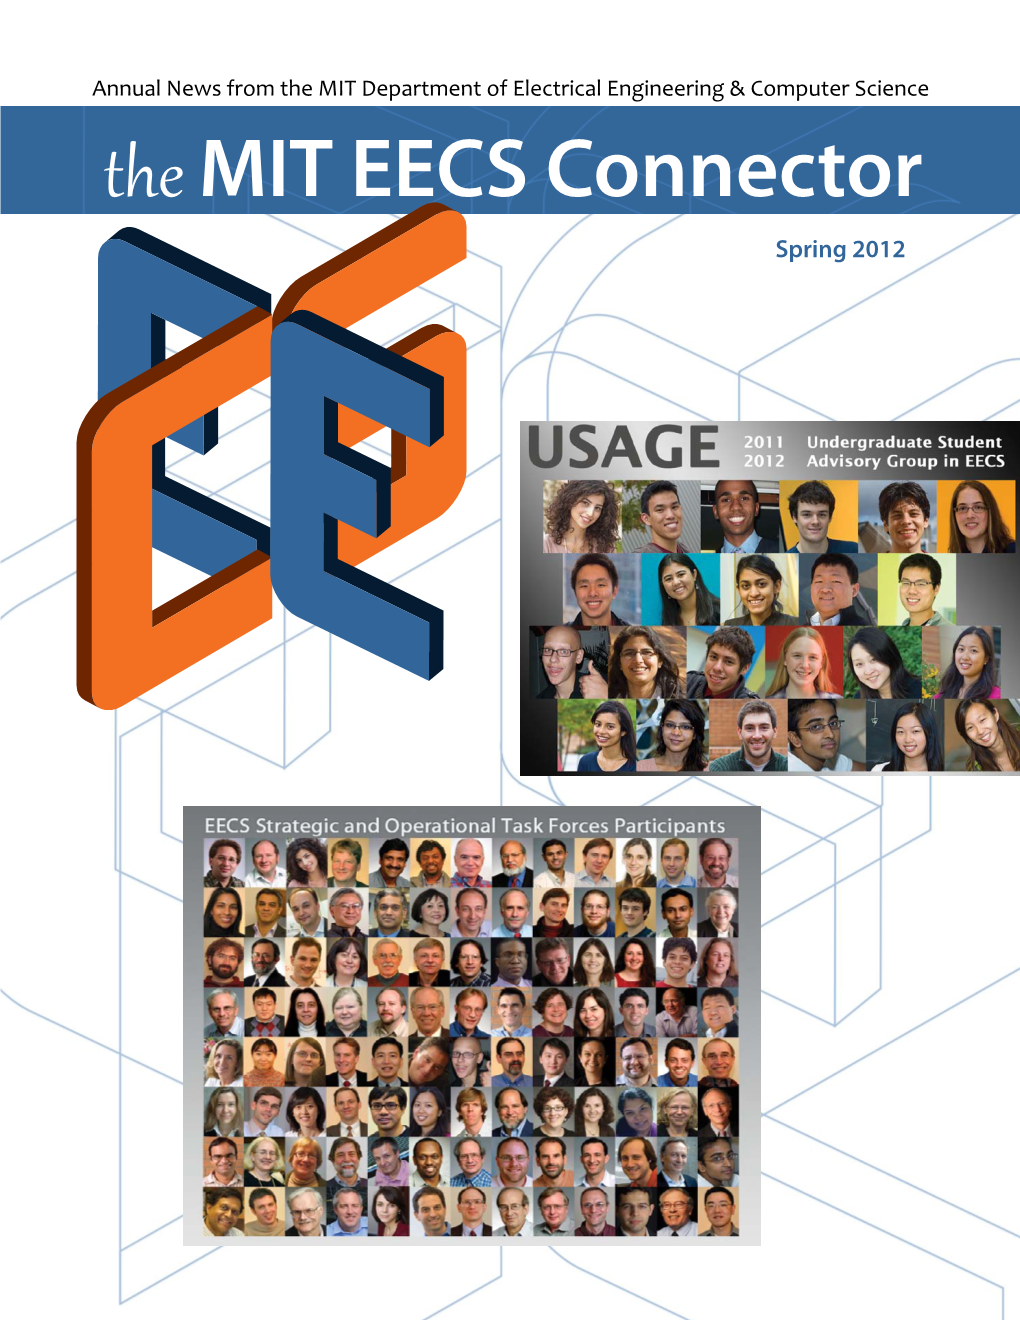 The MIT EECS Connector 2012